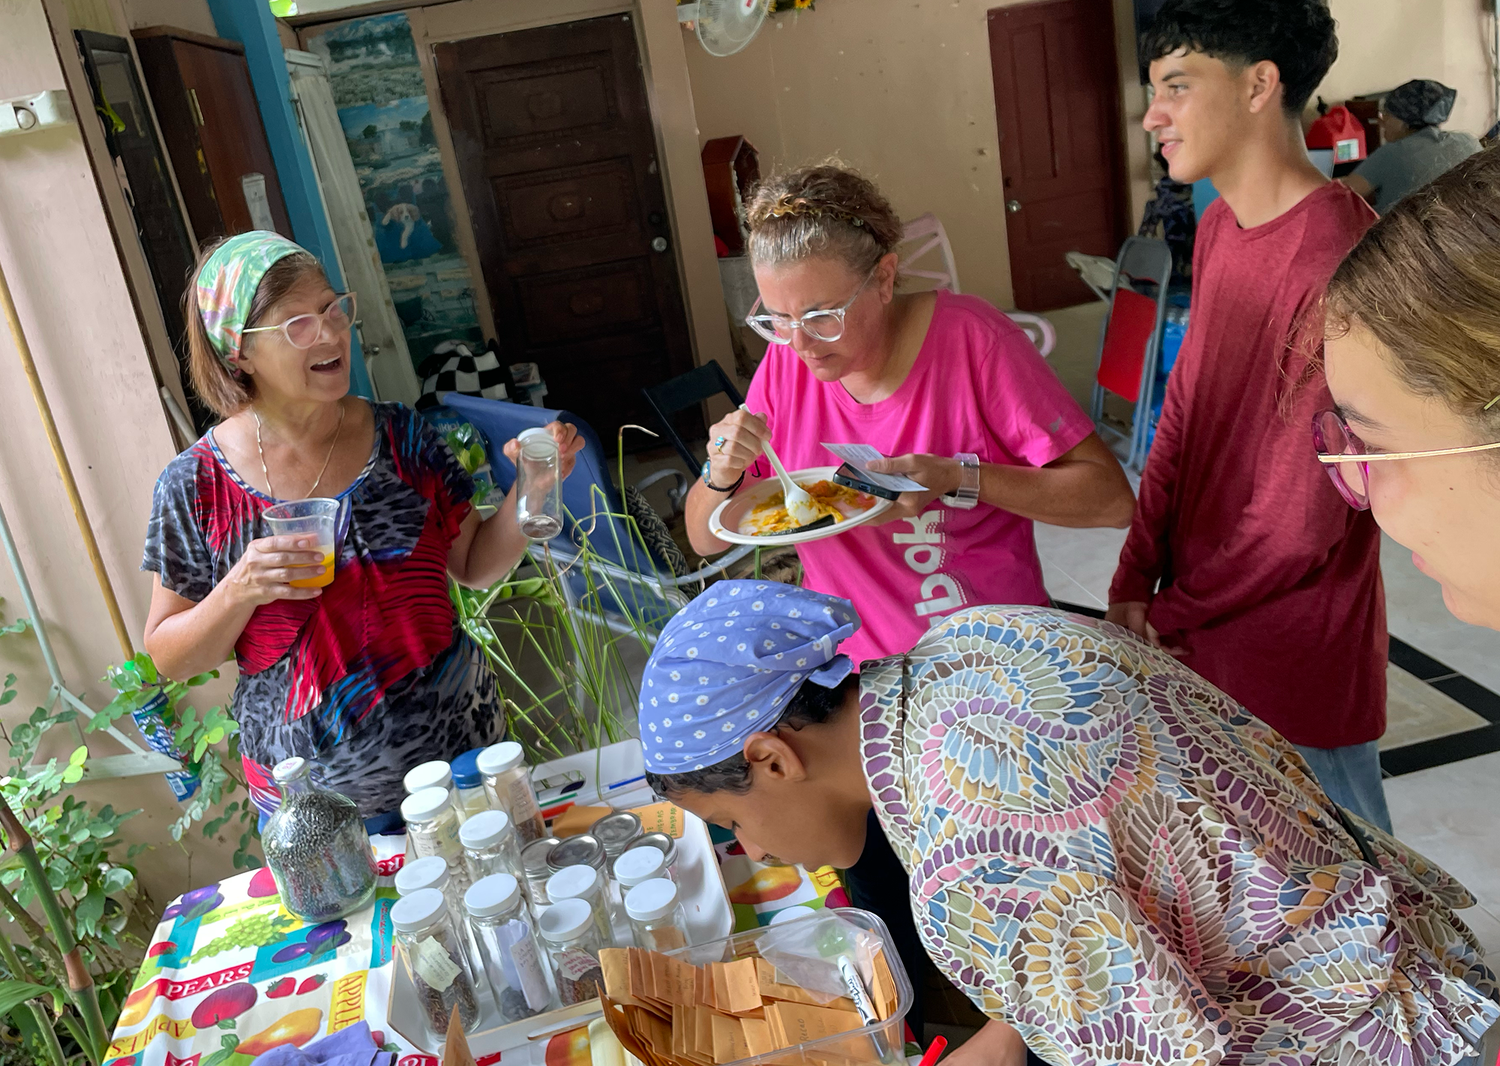 imagen de varias vecinas de San Salvador e integrantes del Depa, compartiendo alrededor de una mesa con semillas y sobres durante una actividad de apoyo al barrio y sus agricultores post-Fiona